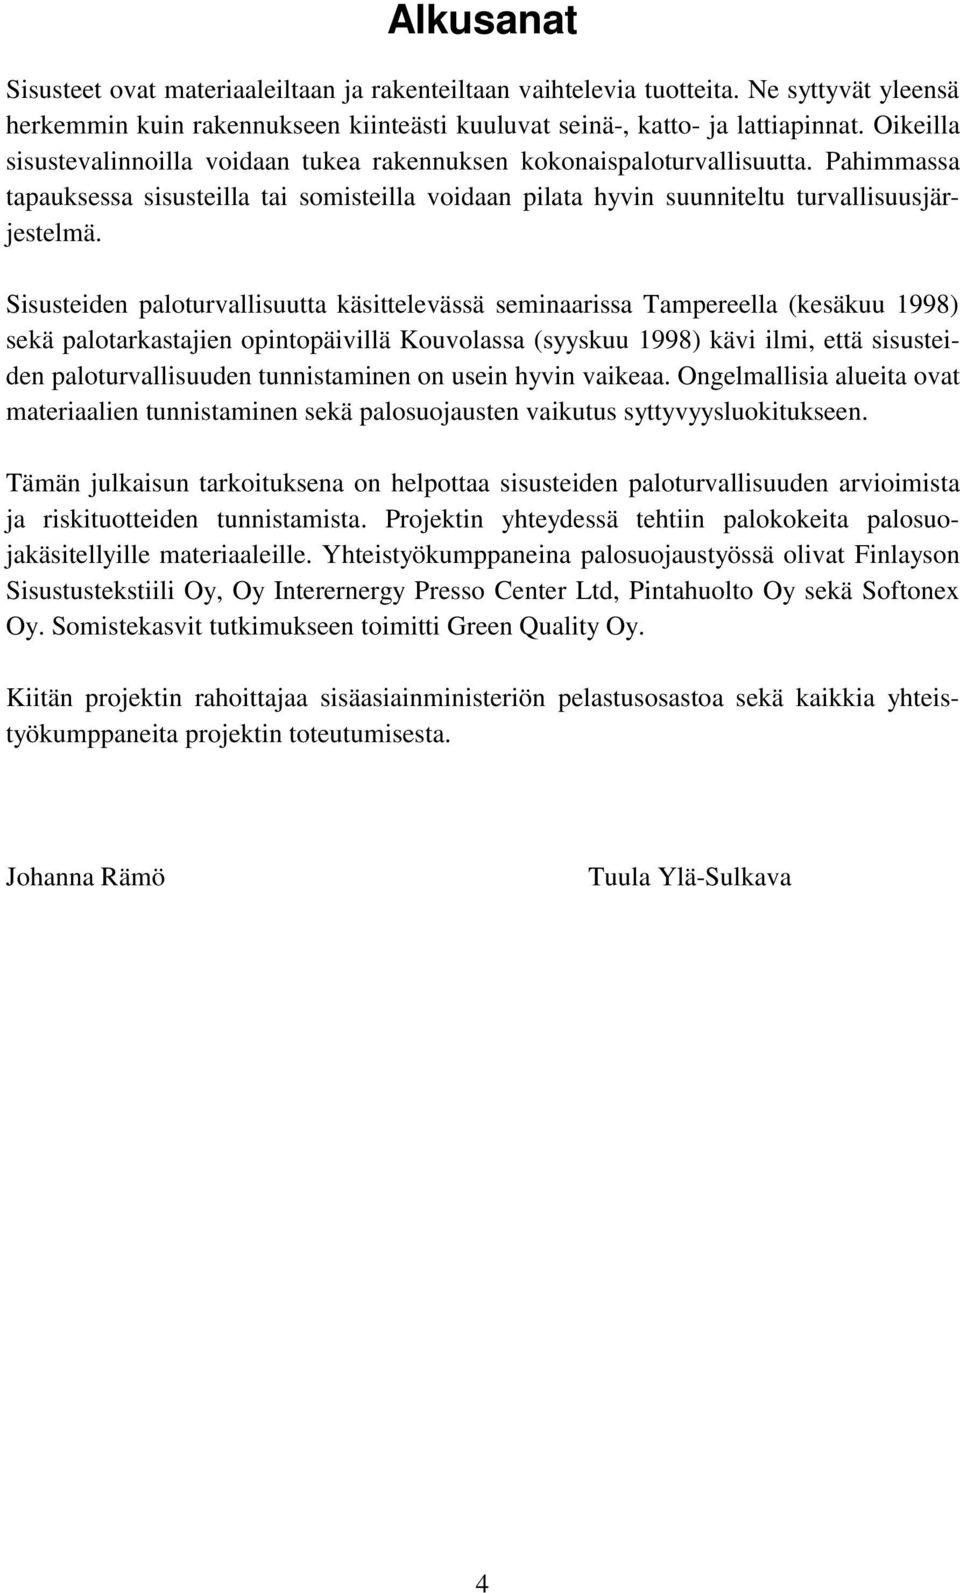 Sisusteiden paloturvallisuutta käsittelevässä seminaarissa Tampereella (kesäkuu 1998) sekä palotarkastajien opintopäivillä Kouvolassa (syyskuu 1998) kävi ilmi, että sisusteiden paloturvallisuuden